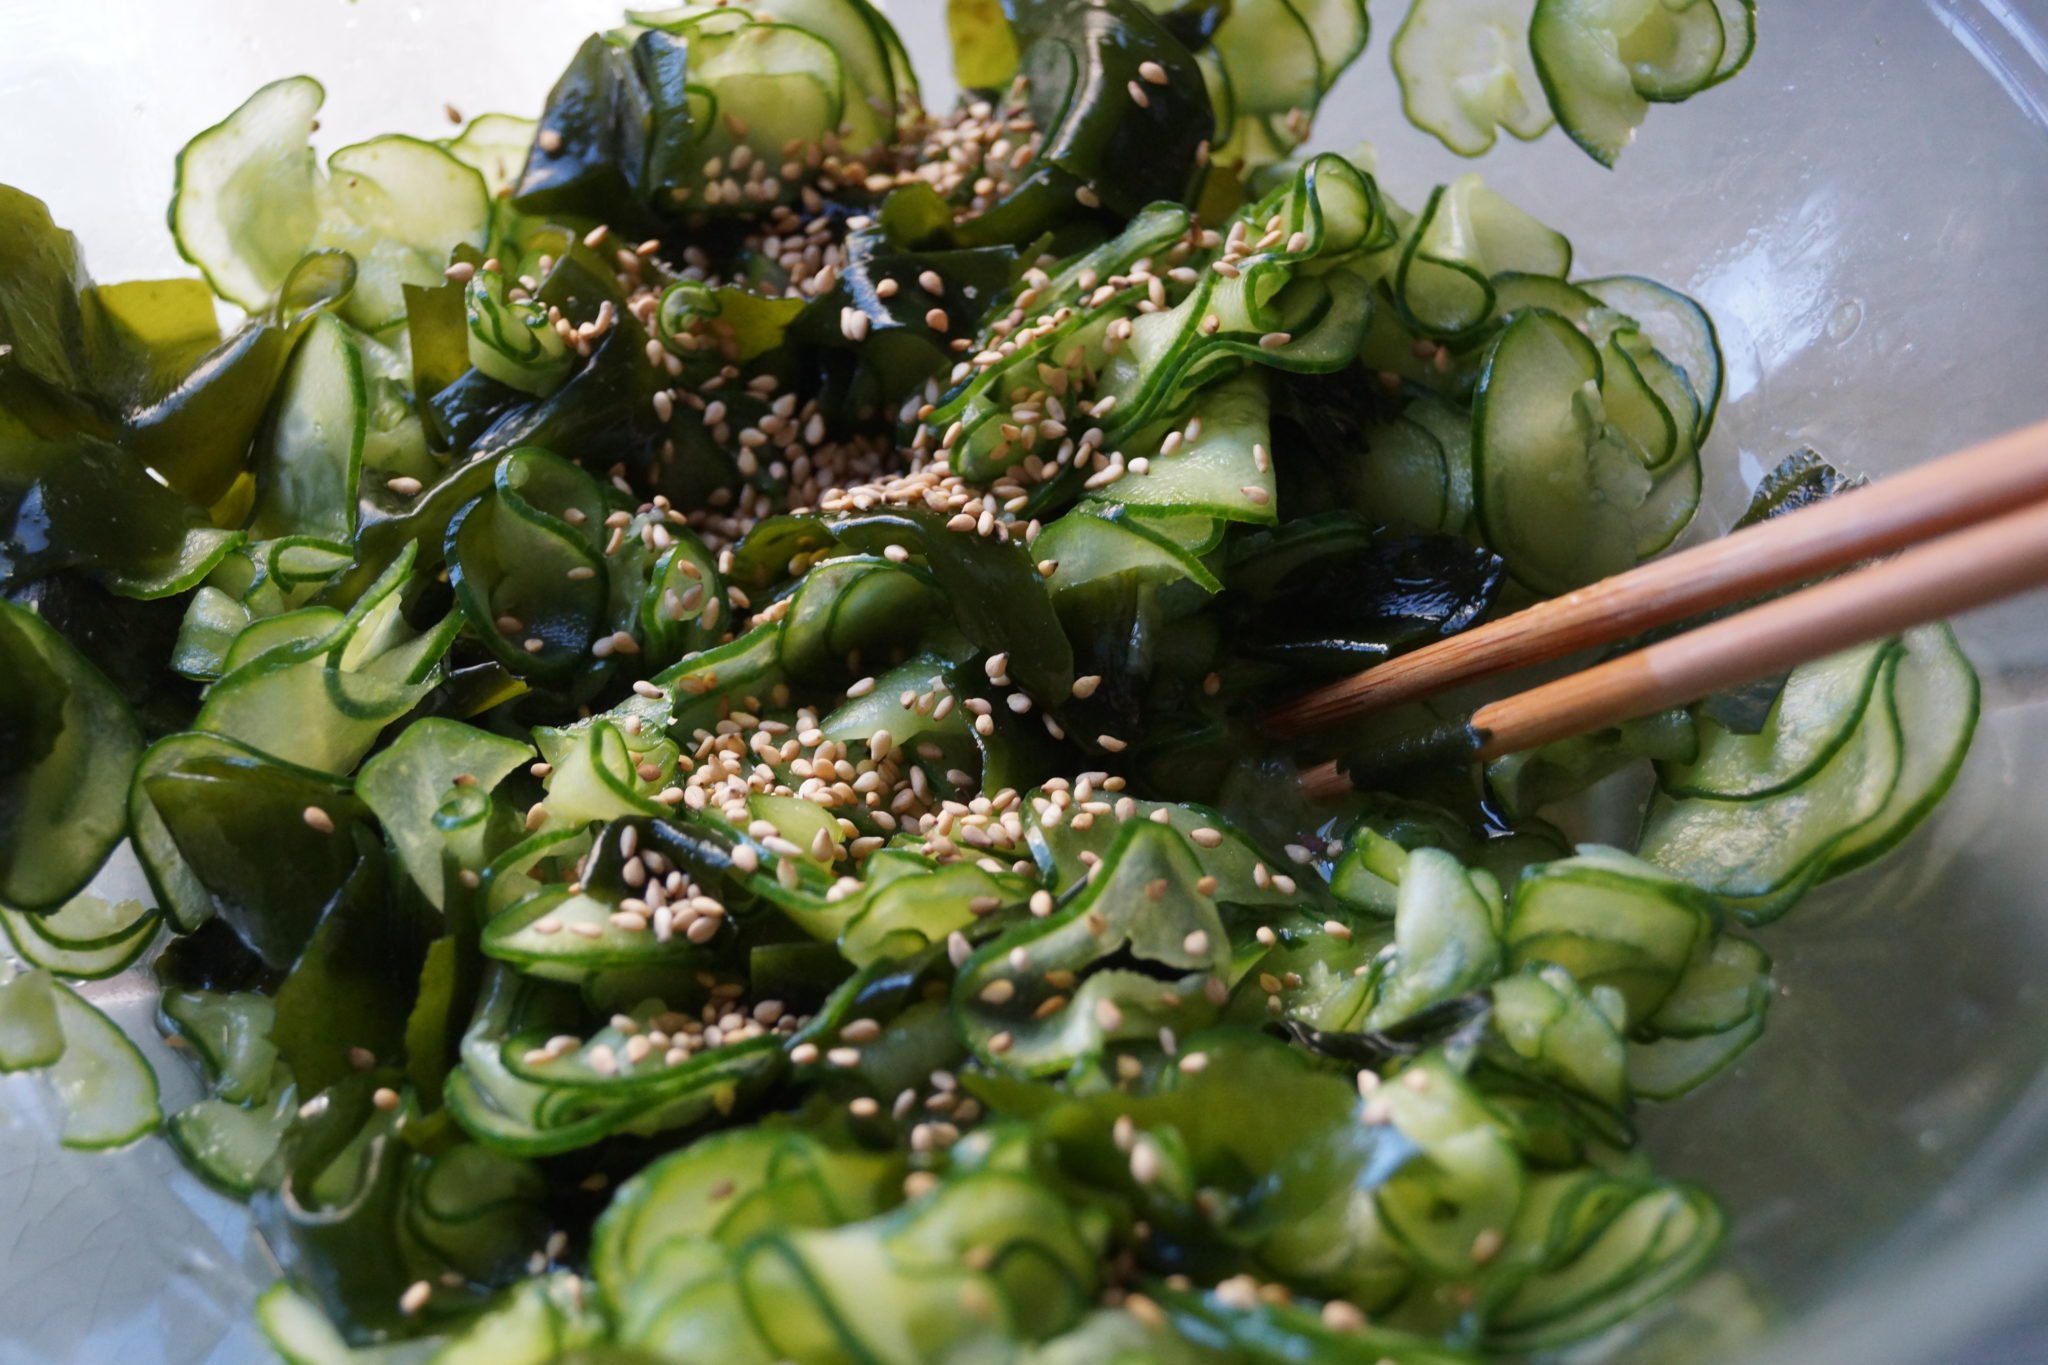 Приготовление водорослей. Салат с водорослями вакаме. Суномоно (Sunomono). Японские водоросли вакаме. Огурцы Суномоно.